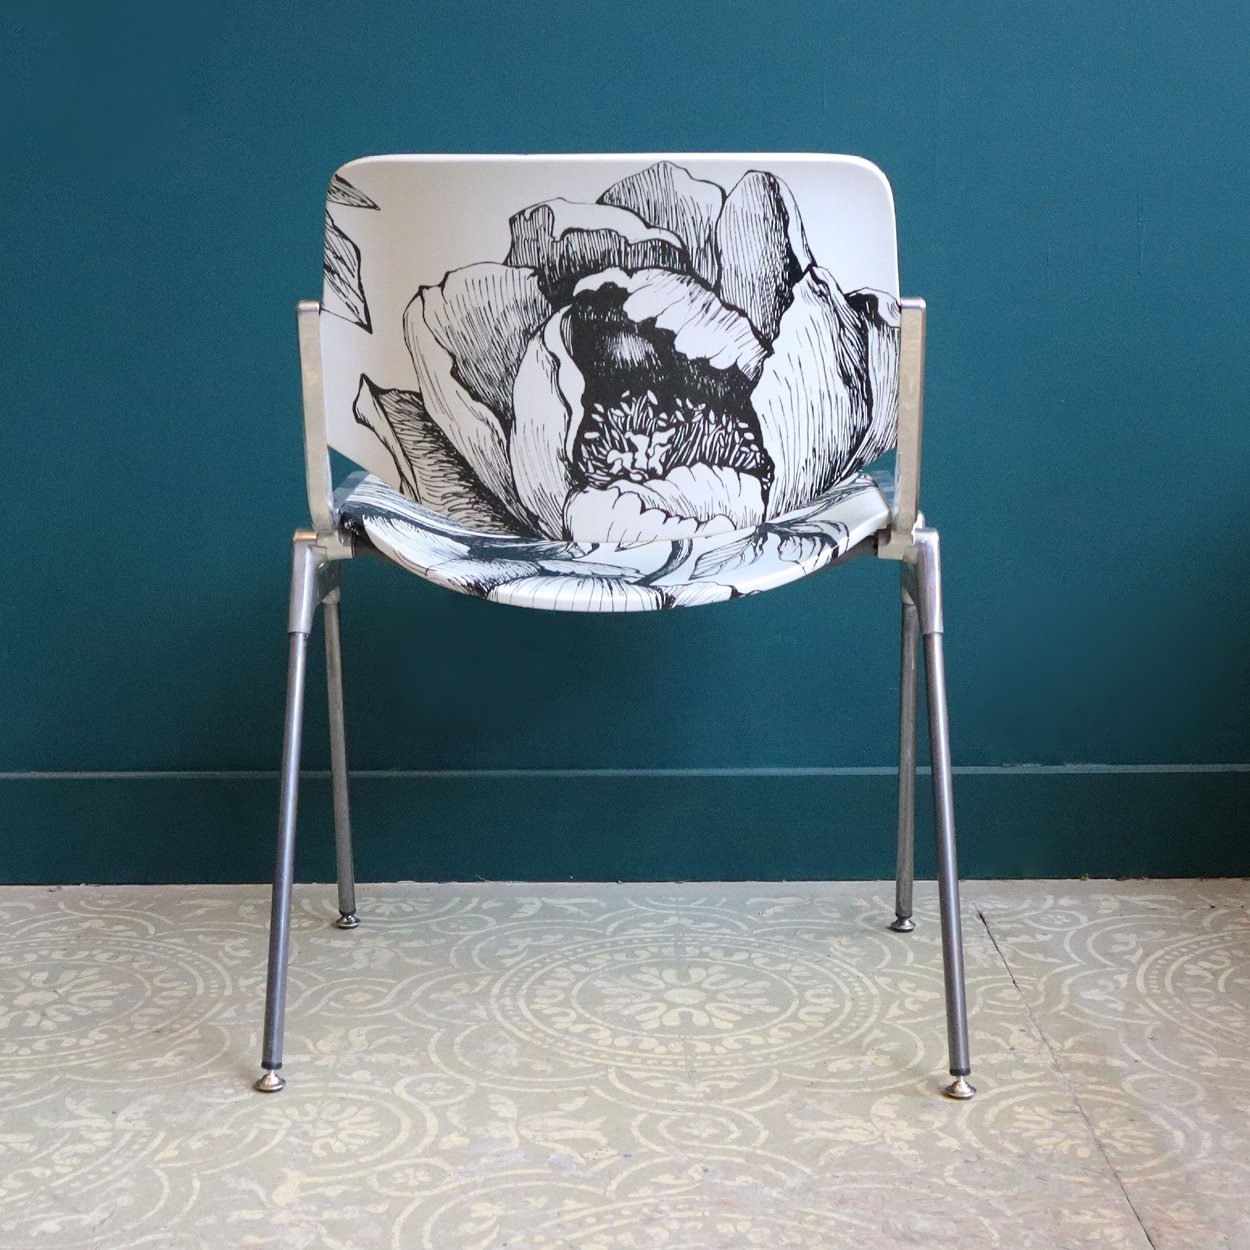 Etch Flower Chair - SuperMatique